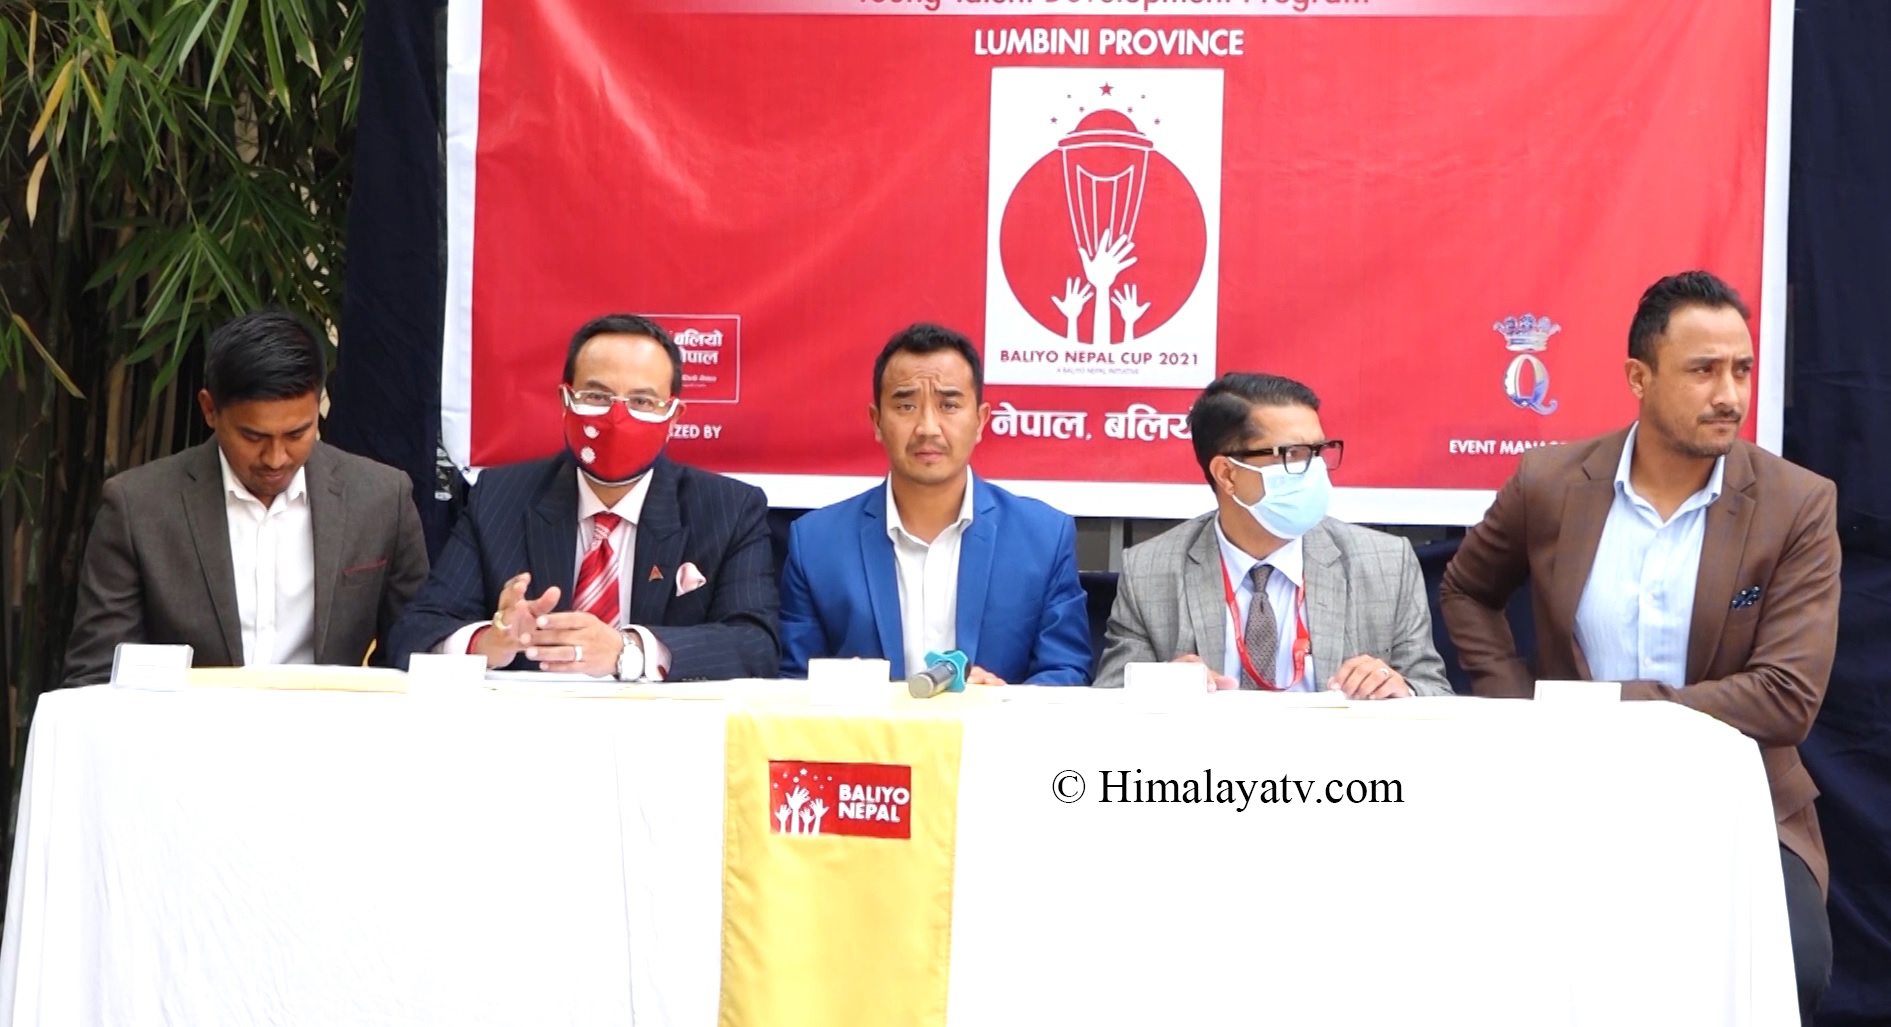 दाङमा लुम्बिनी प्रदेशस्तरीय बलियो नेपाल कप क्रिकेट हुने